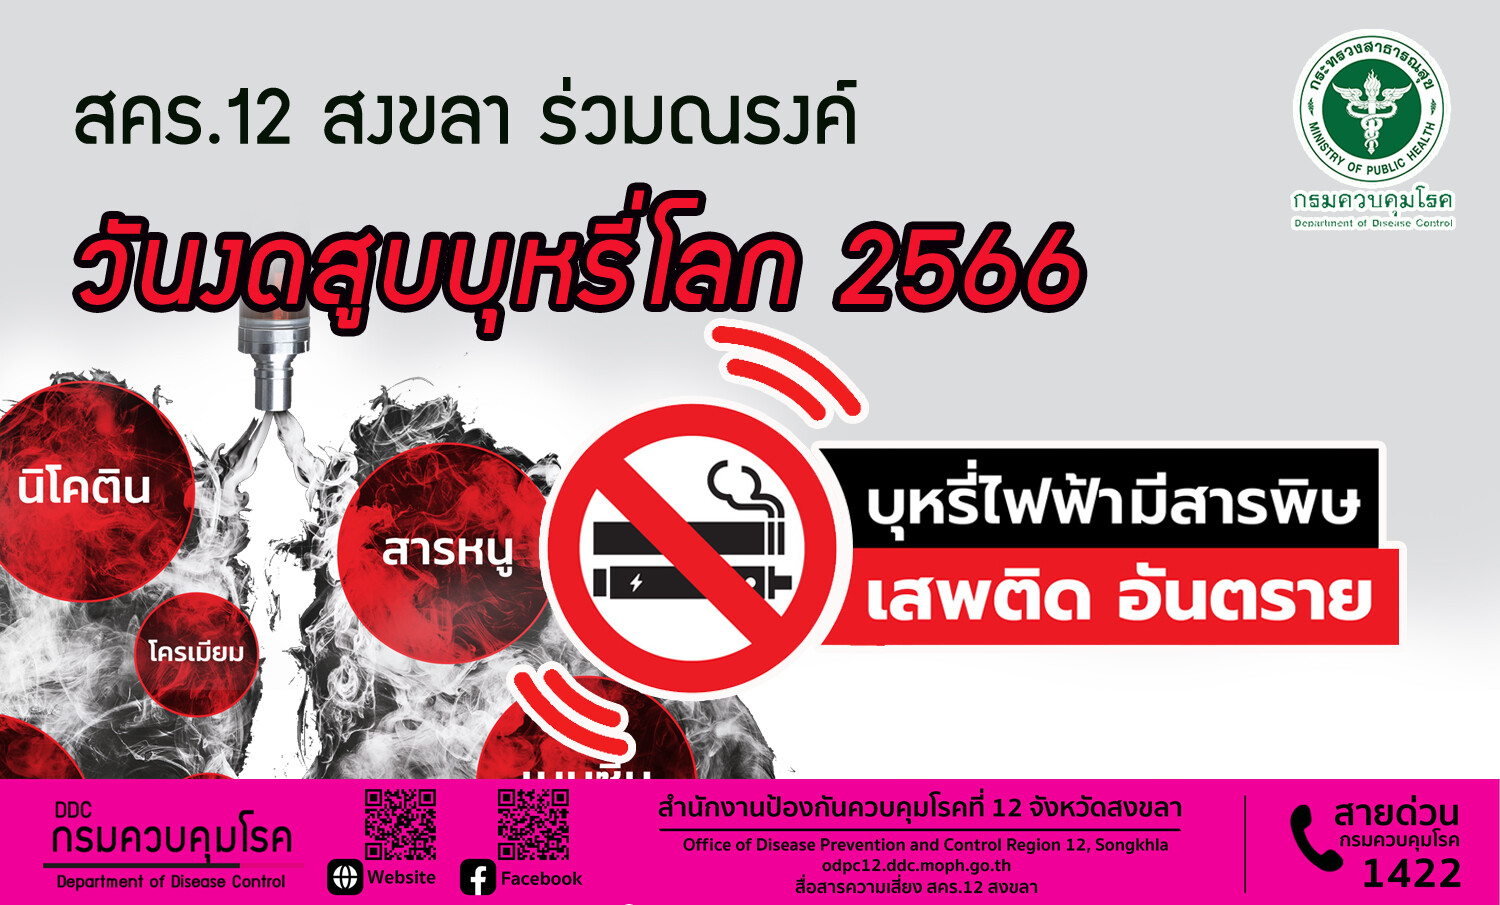 สคร.12 สงขลา ร่วมณรงค์ วันงดสูบบุหรี่โลก 2566 เน้นย้ำ "บุหรี่ไฟฟ้ามีสารพิษ เสพติด อันตราย"